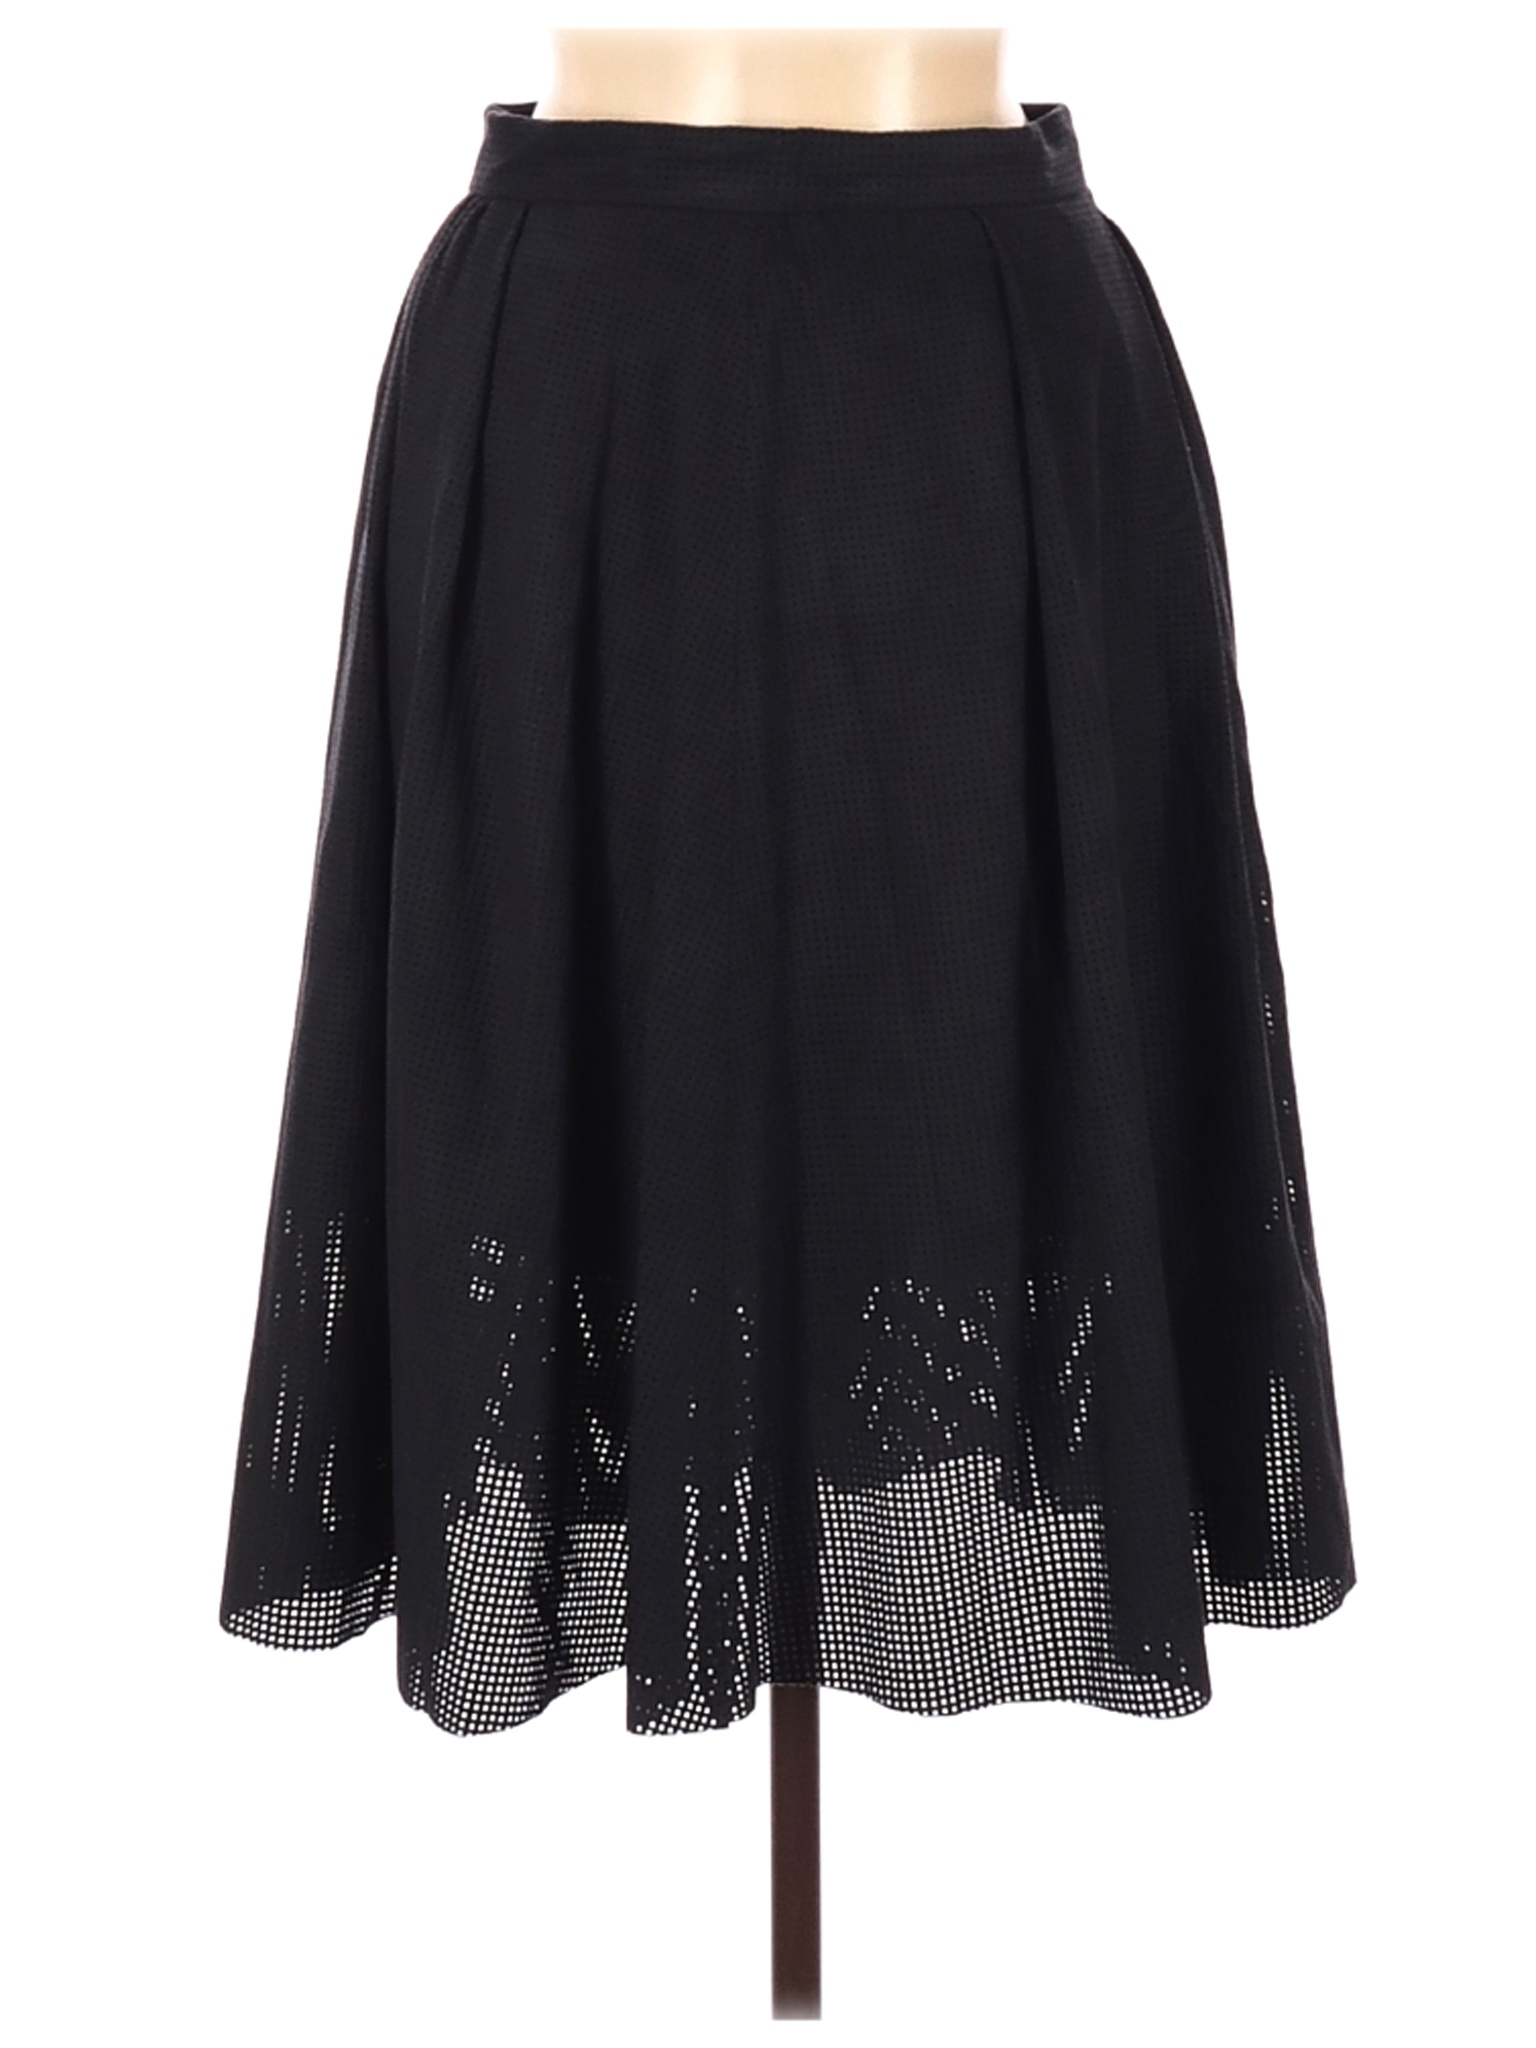 Zara Basic Women Black Casual Skirt M | eBay